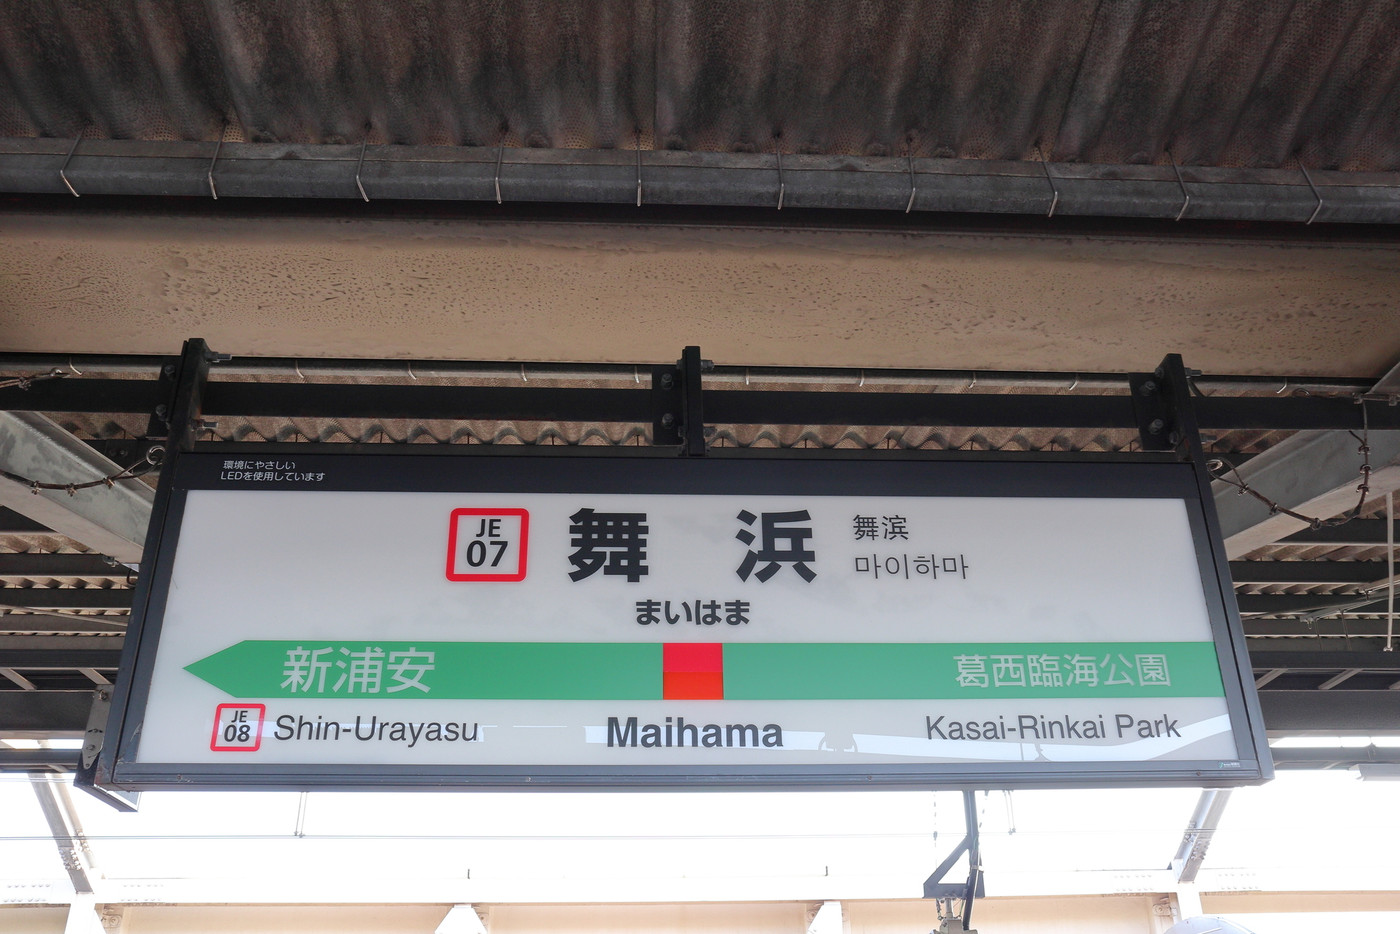 舞浜駅の駅名表示版(京葉線下り)